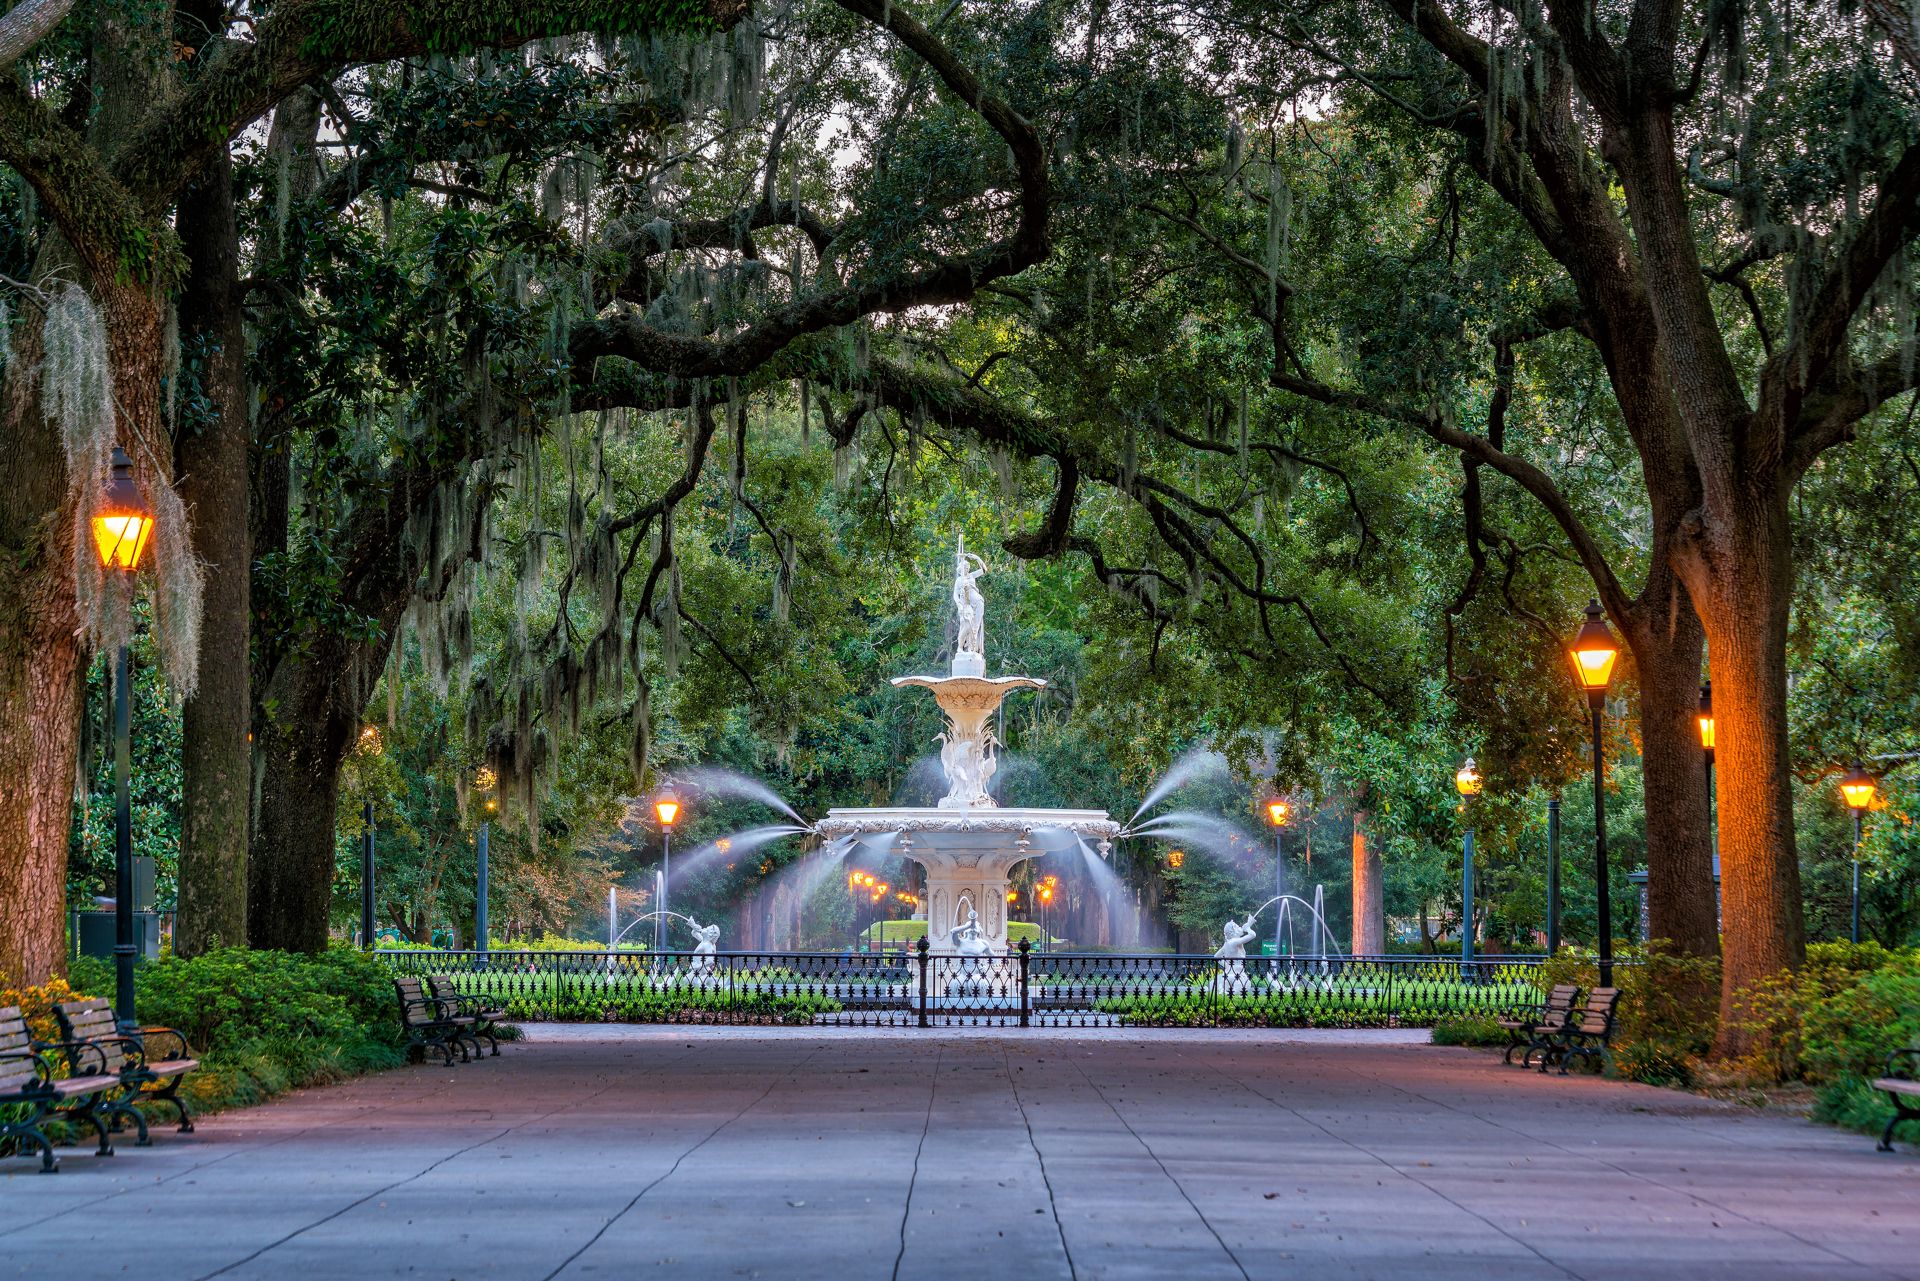 Famous and historic Forsyth Fountain in Savannah, Georgia, USA.